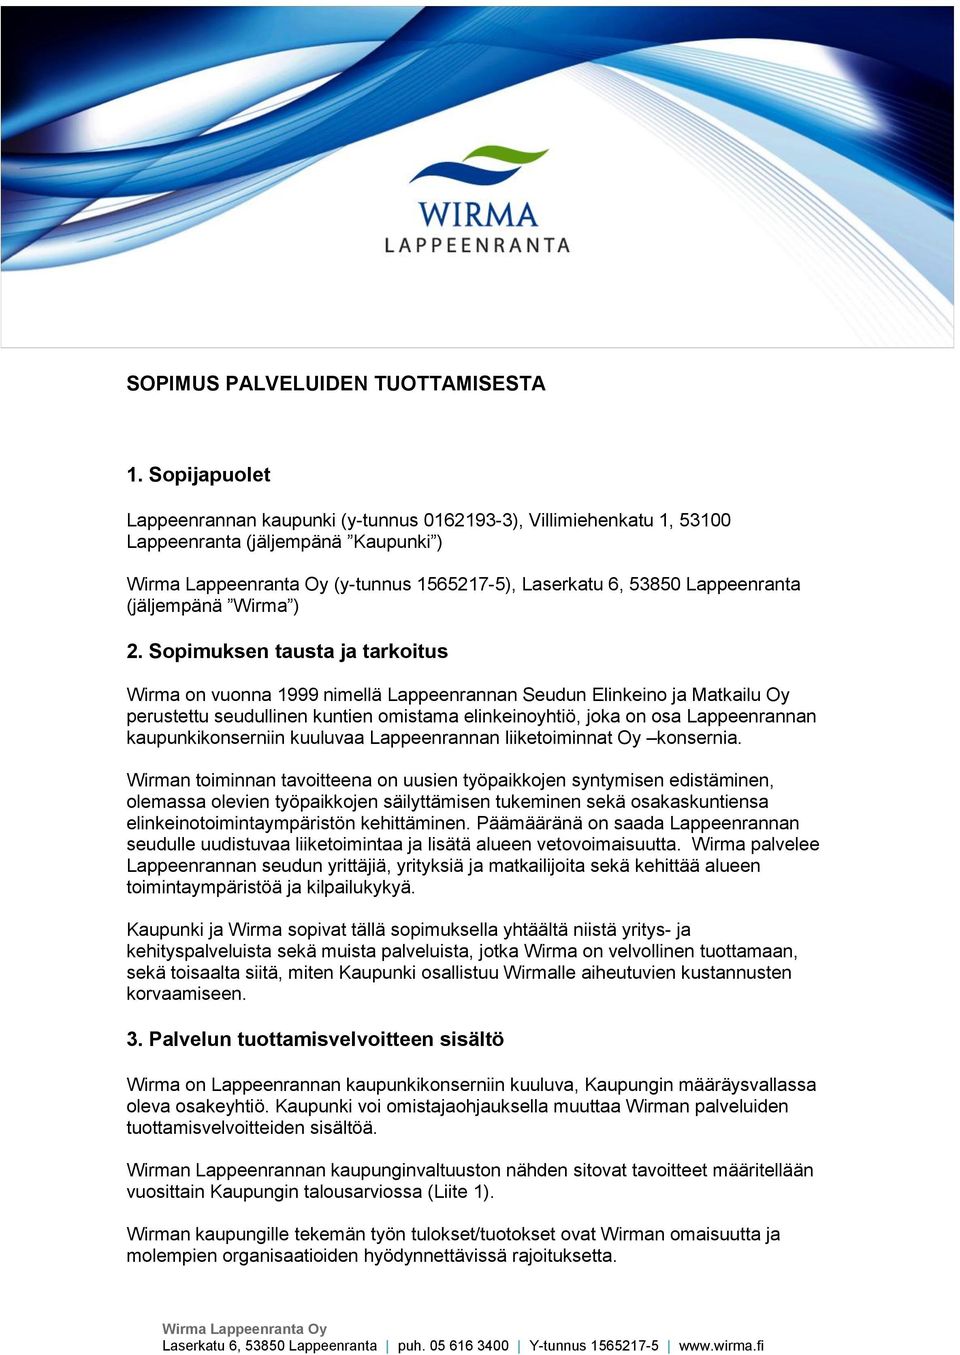 Sopimuksen tausta ja tarkoitus Wirma on vuonna 1999 nimellä Lappeenrannan Seudun Elinkeino ja Matkailu Oy perustettu seudullinen kuntien omistama elinkeinoyhtiö, joka on osa Lappeenrannan